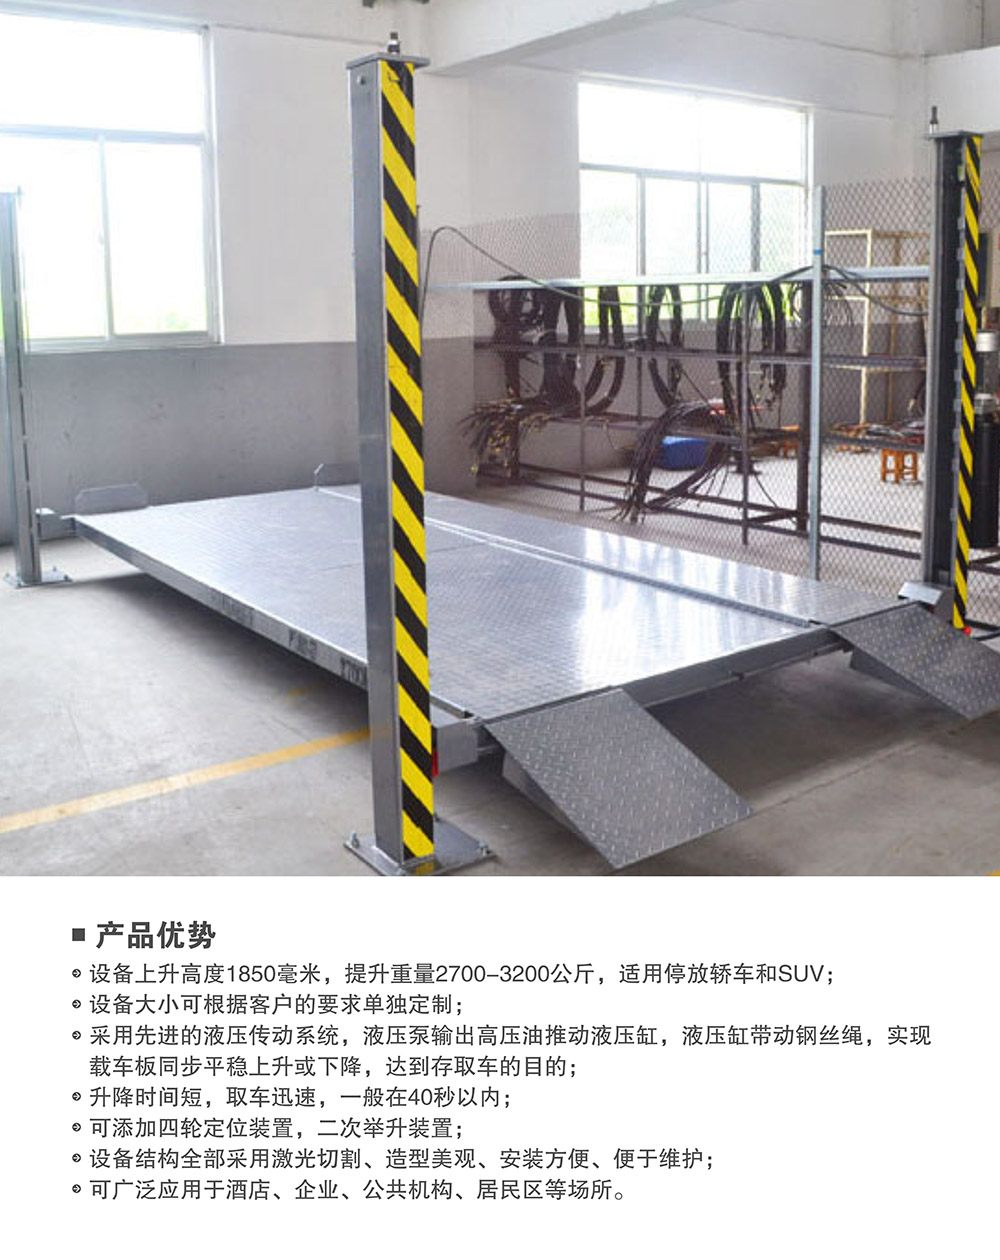 重庆四柱简易升降立体停车设备产品优势.jpg